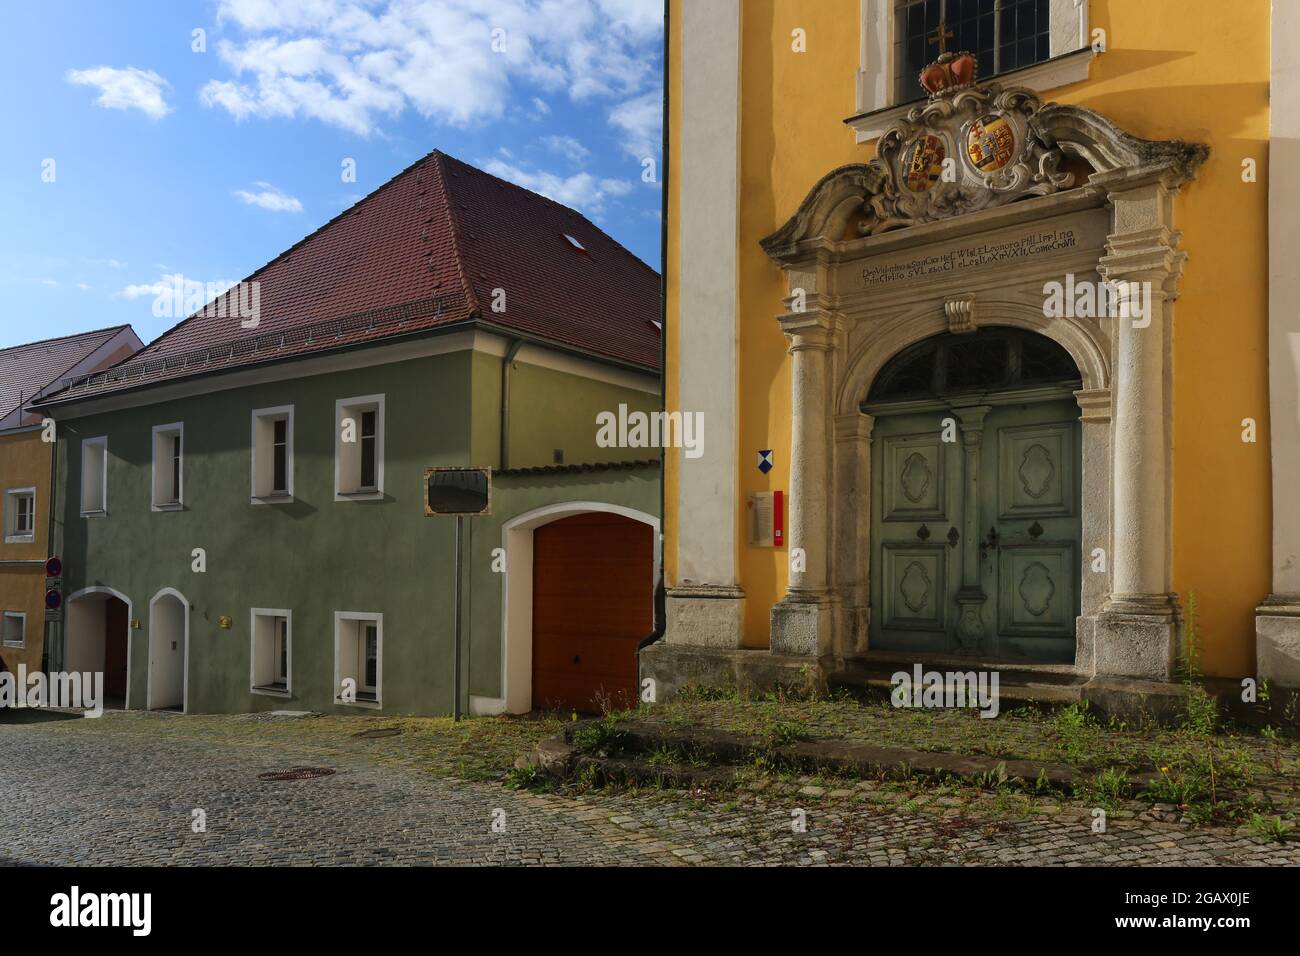 Altstadt oder Innenstadt mit historischen Kloster oder Kirche mit Eingangsportal dramatischen Wolken in Sulzbach Rosenberg, Amberg, Oberpfalz, Bayern! Stock Photo